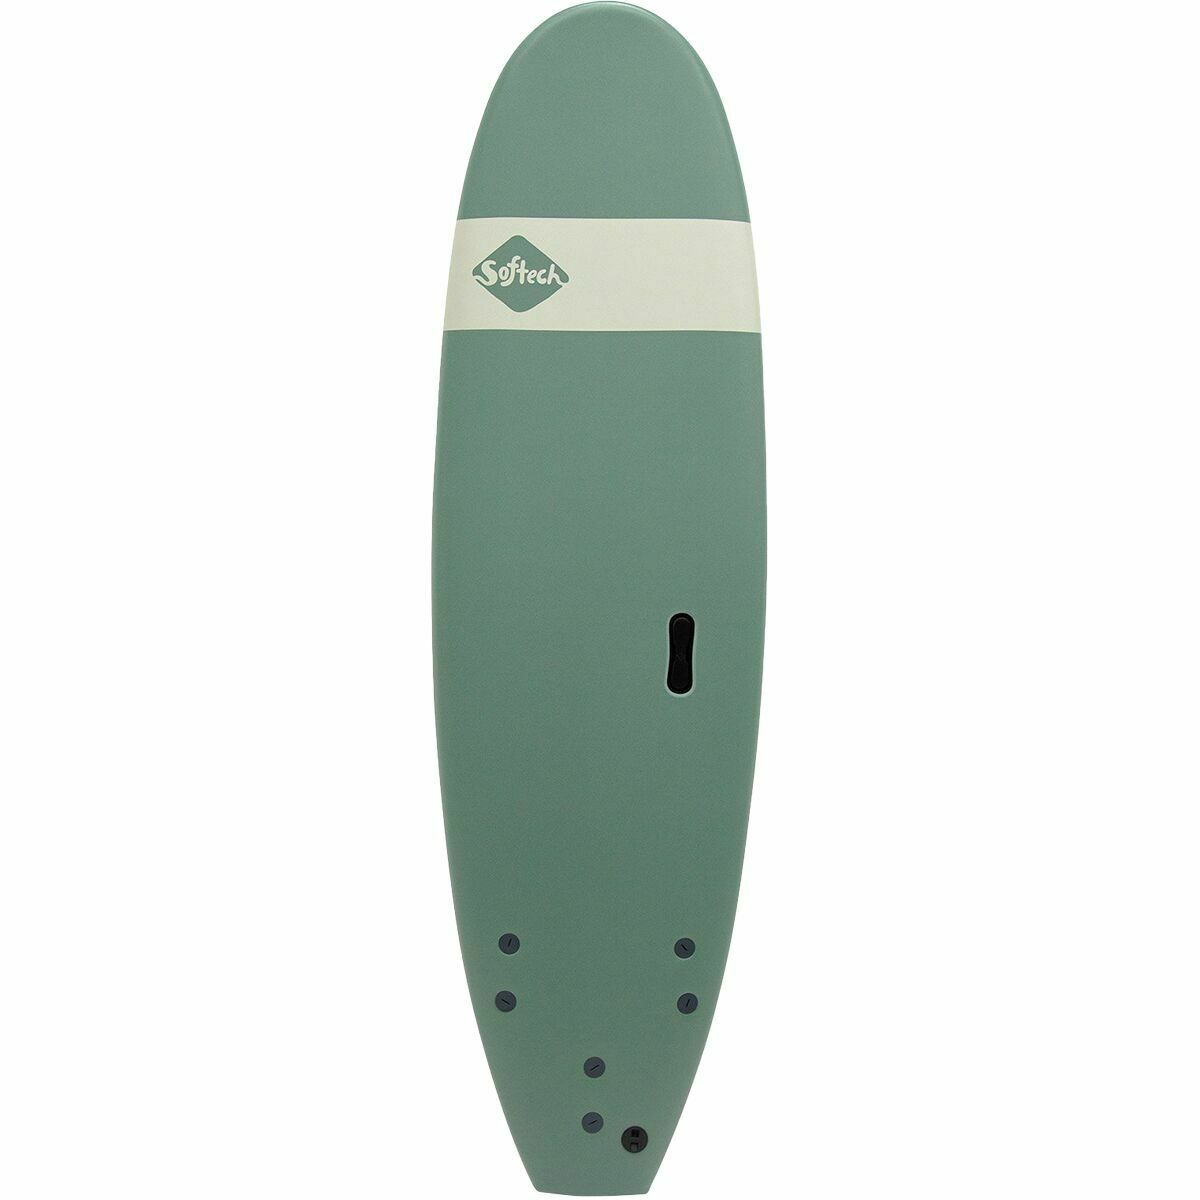 Softech Roller Longboard Surfboard